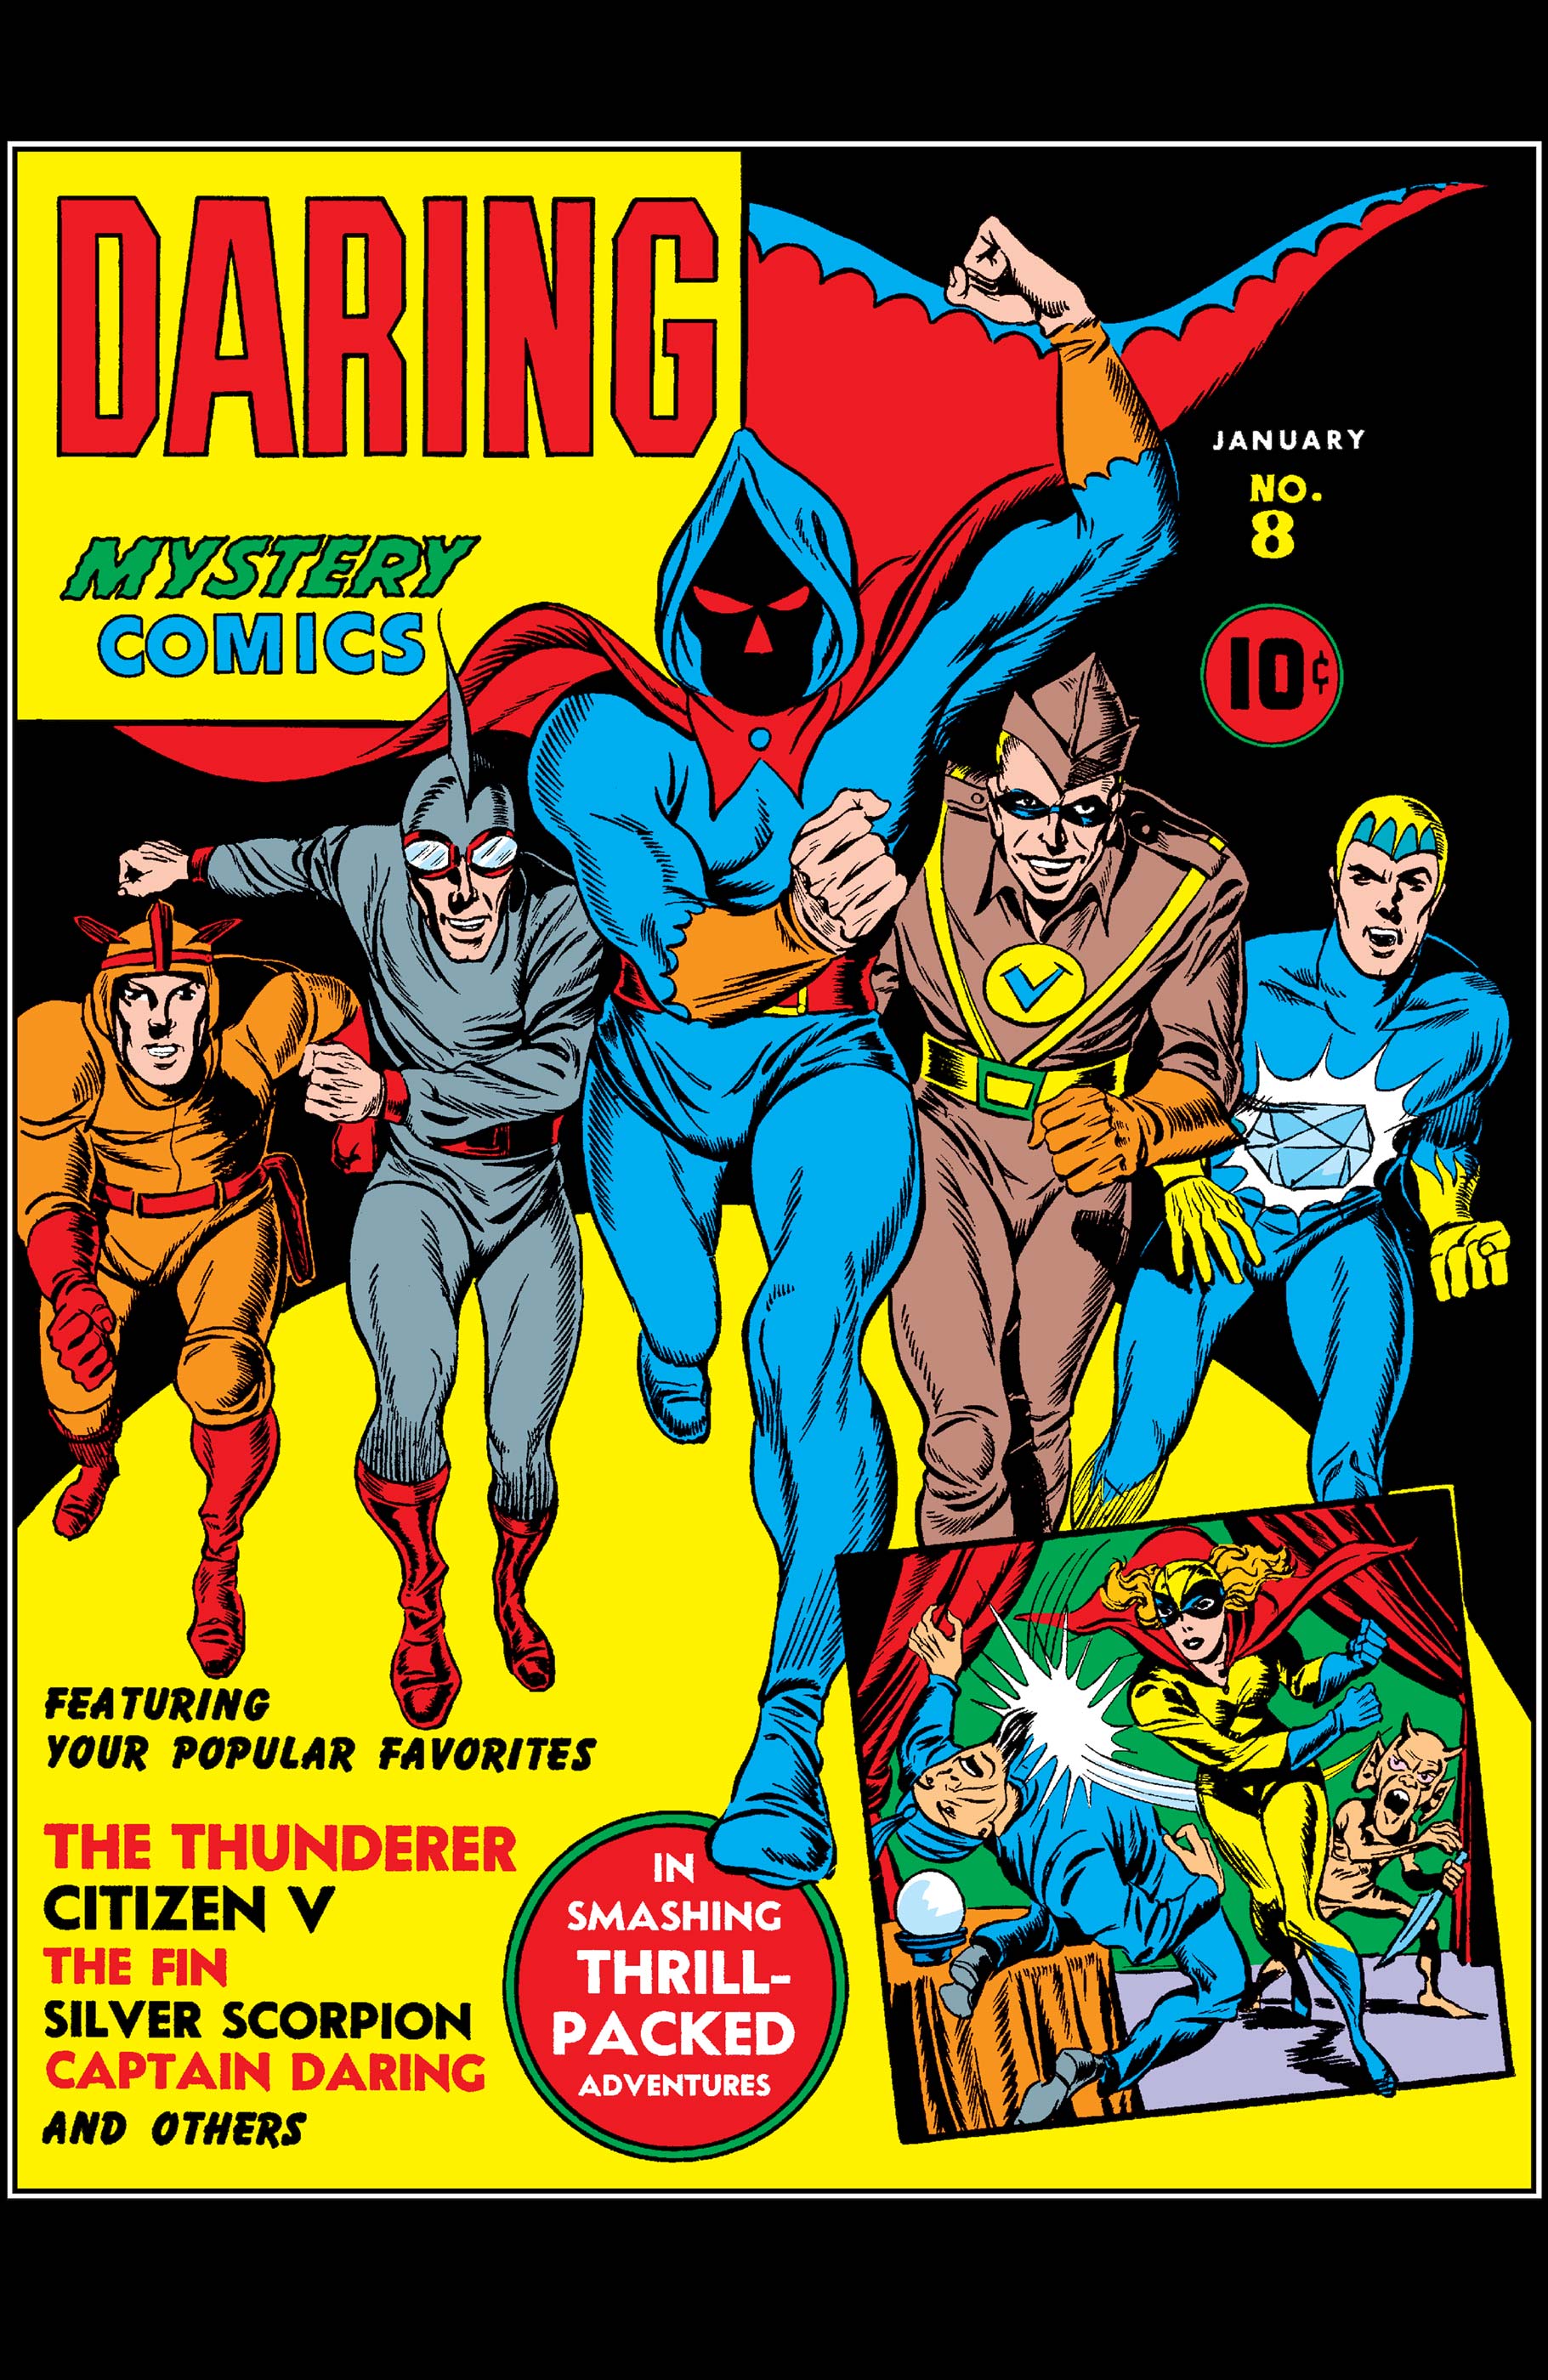 Daring Mystery Comics (1940) #8